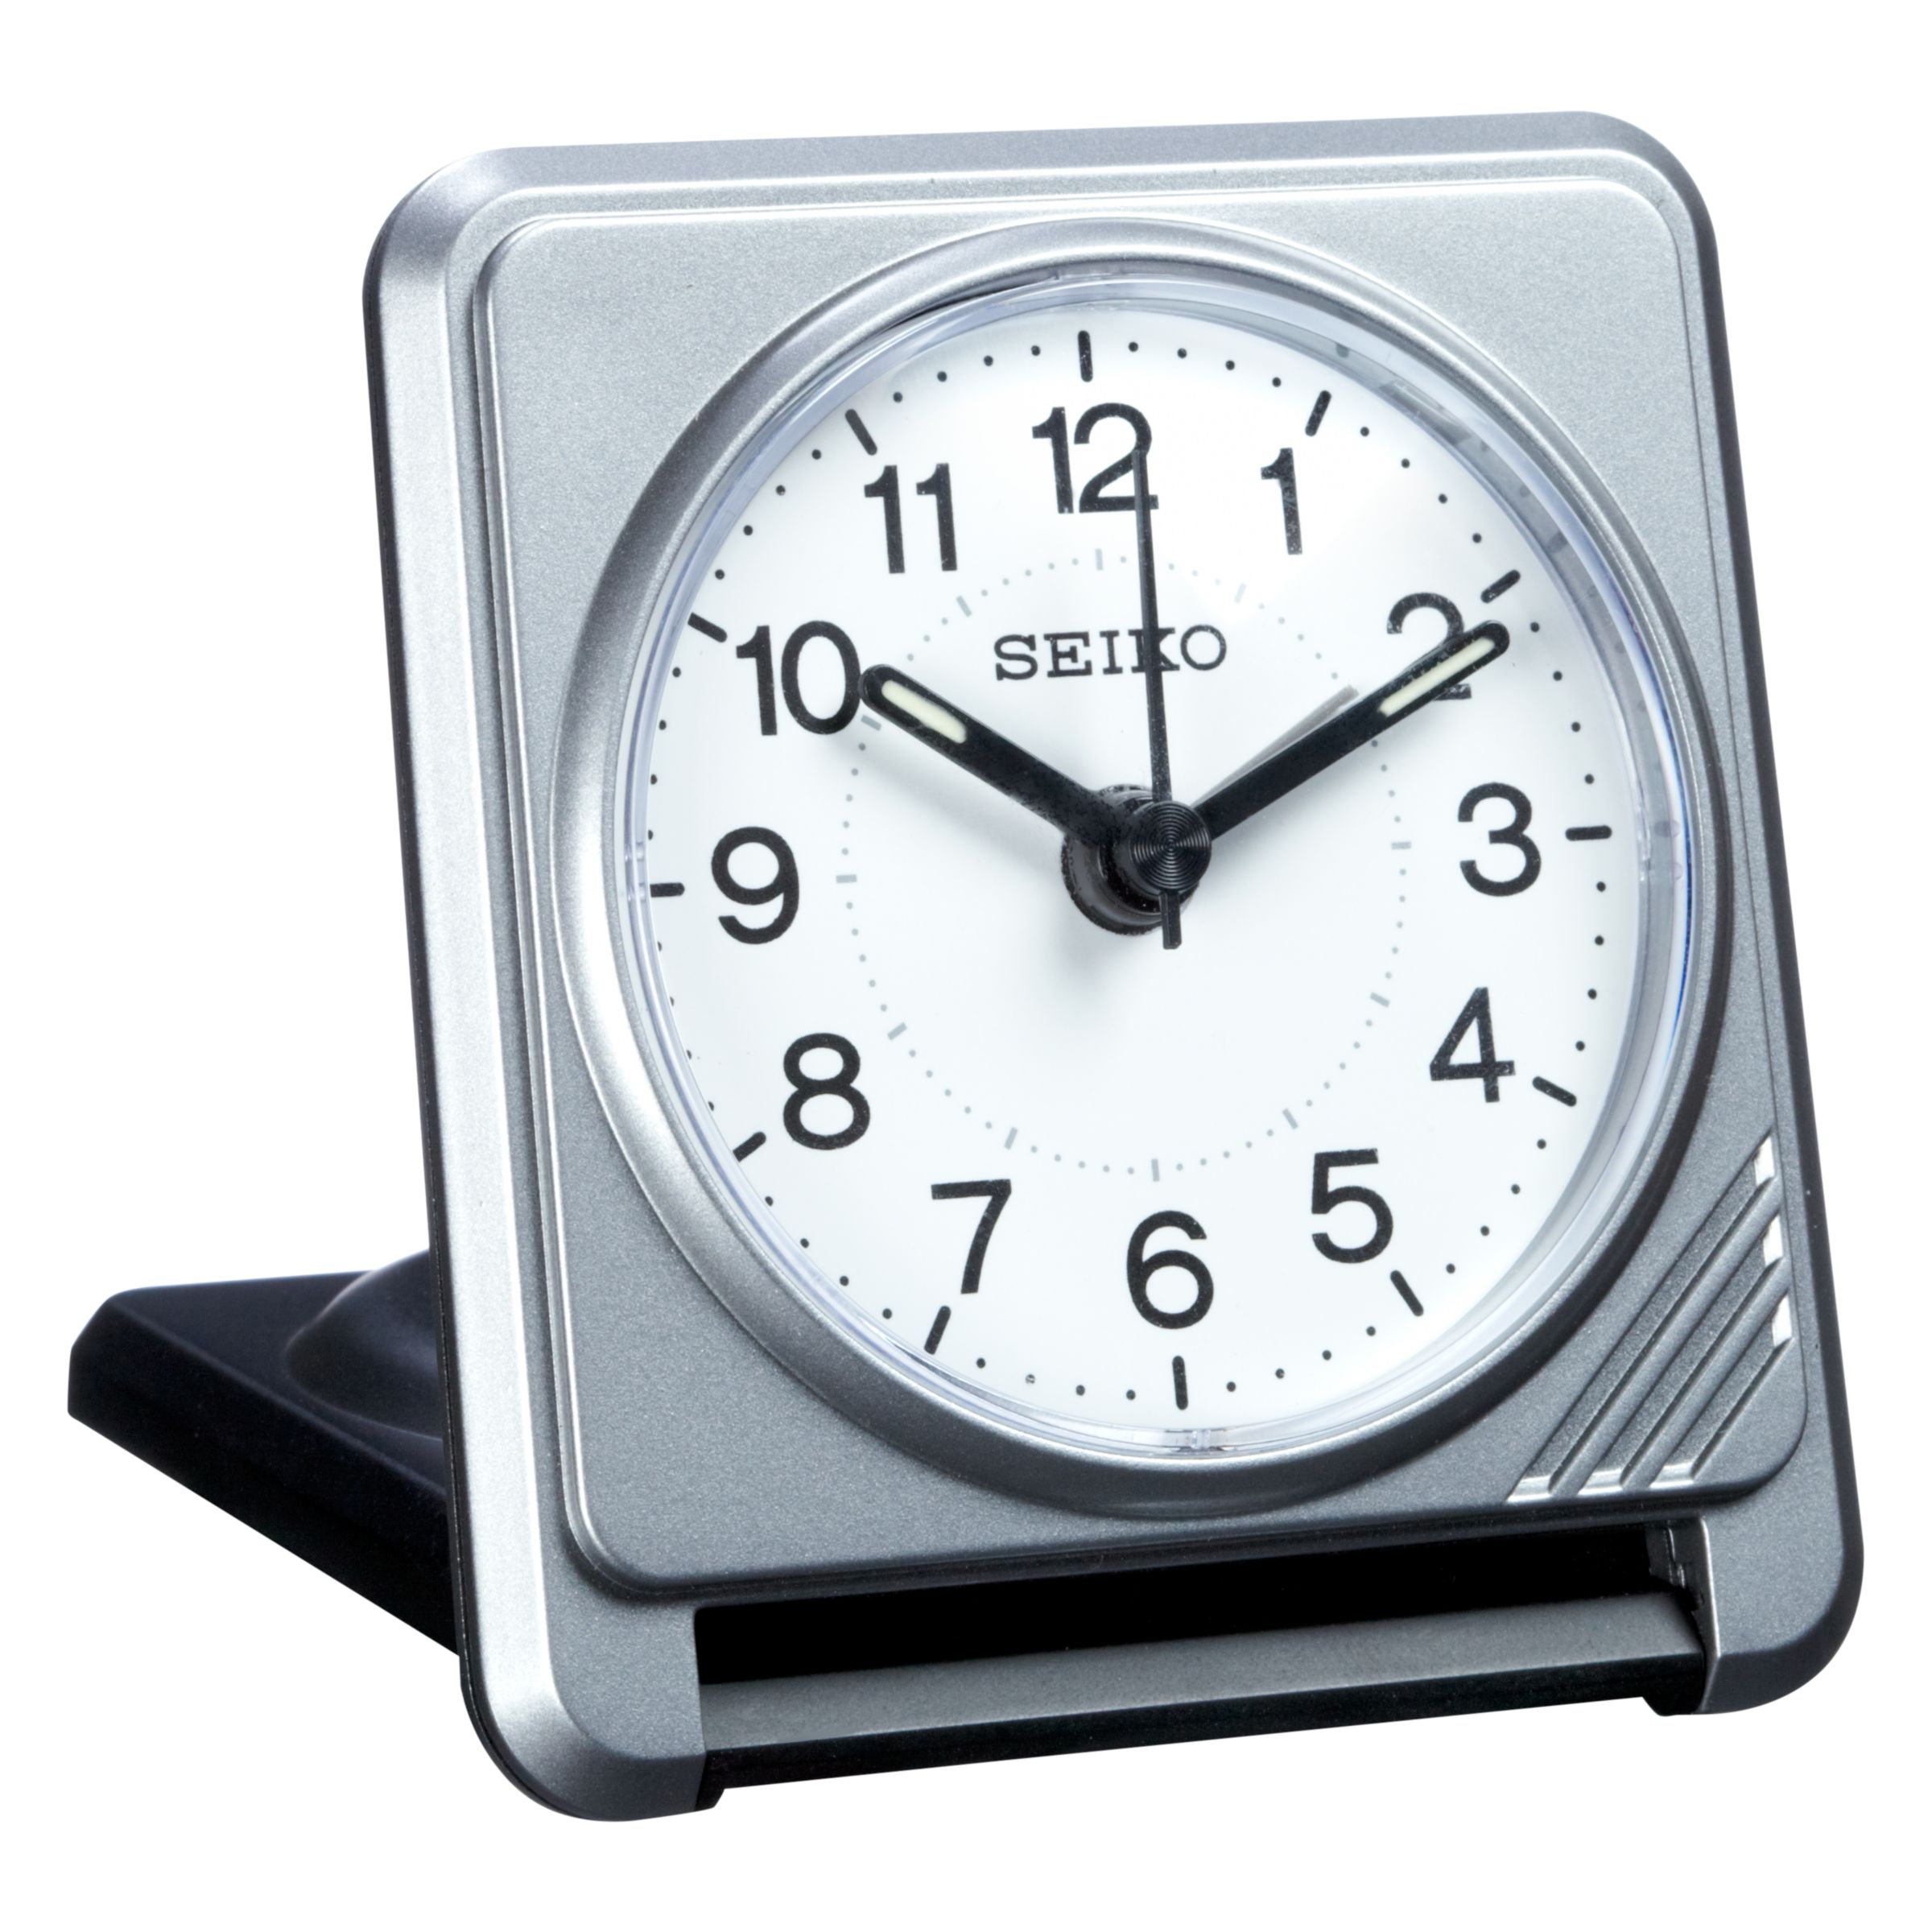 Seiko Clam Travel Alarm Clock